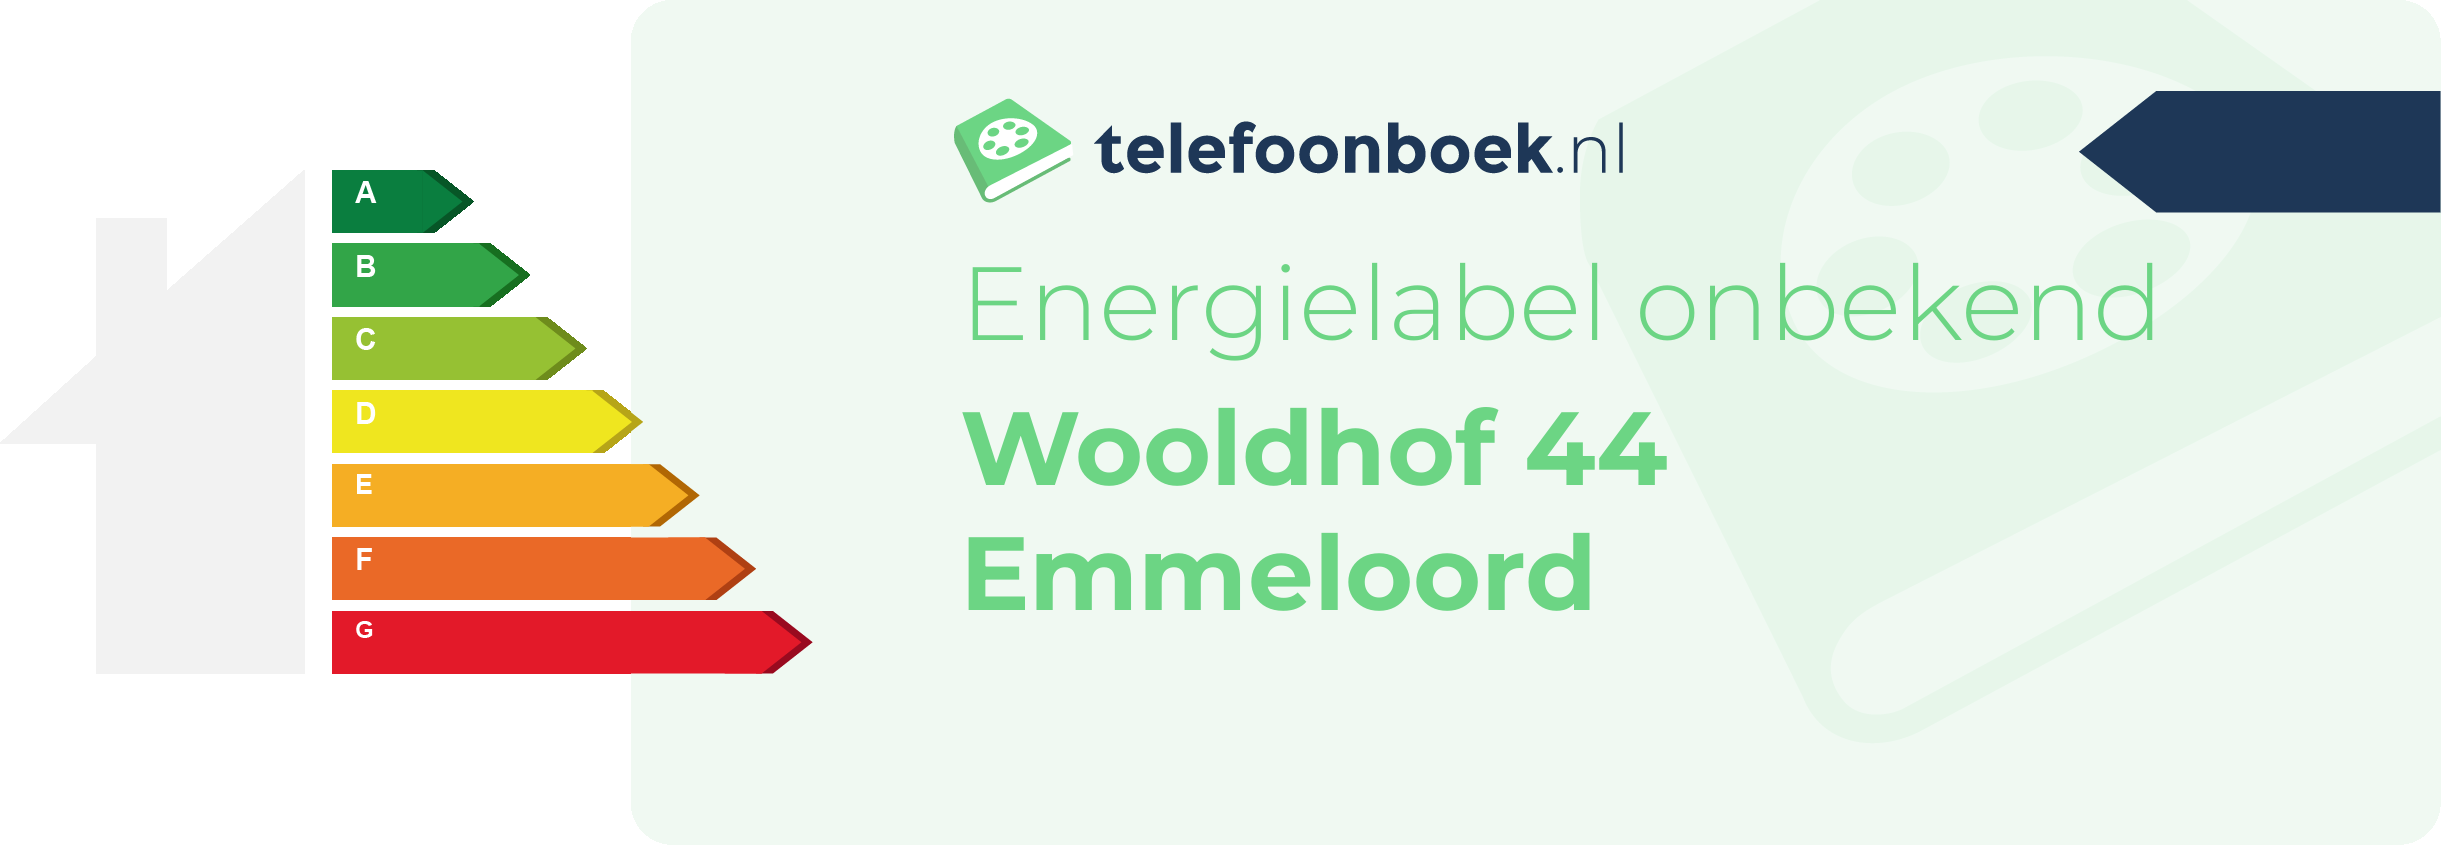 Energielabel Wooldhof 44 Emmeloord